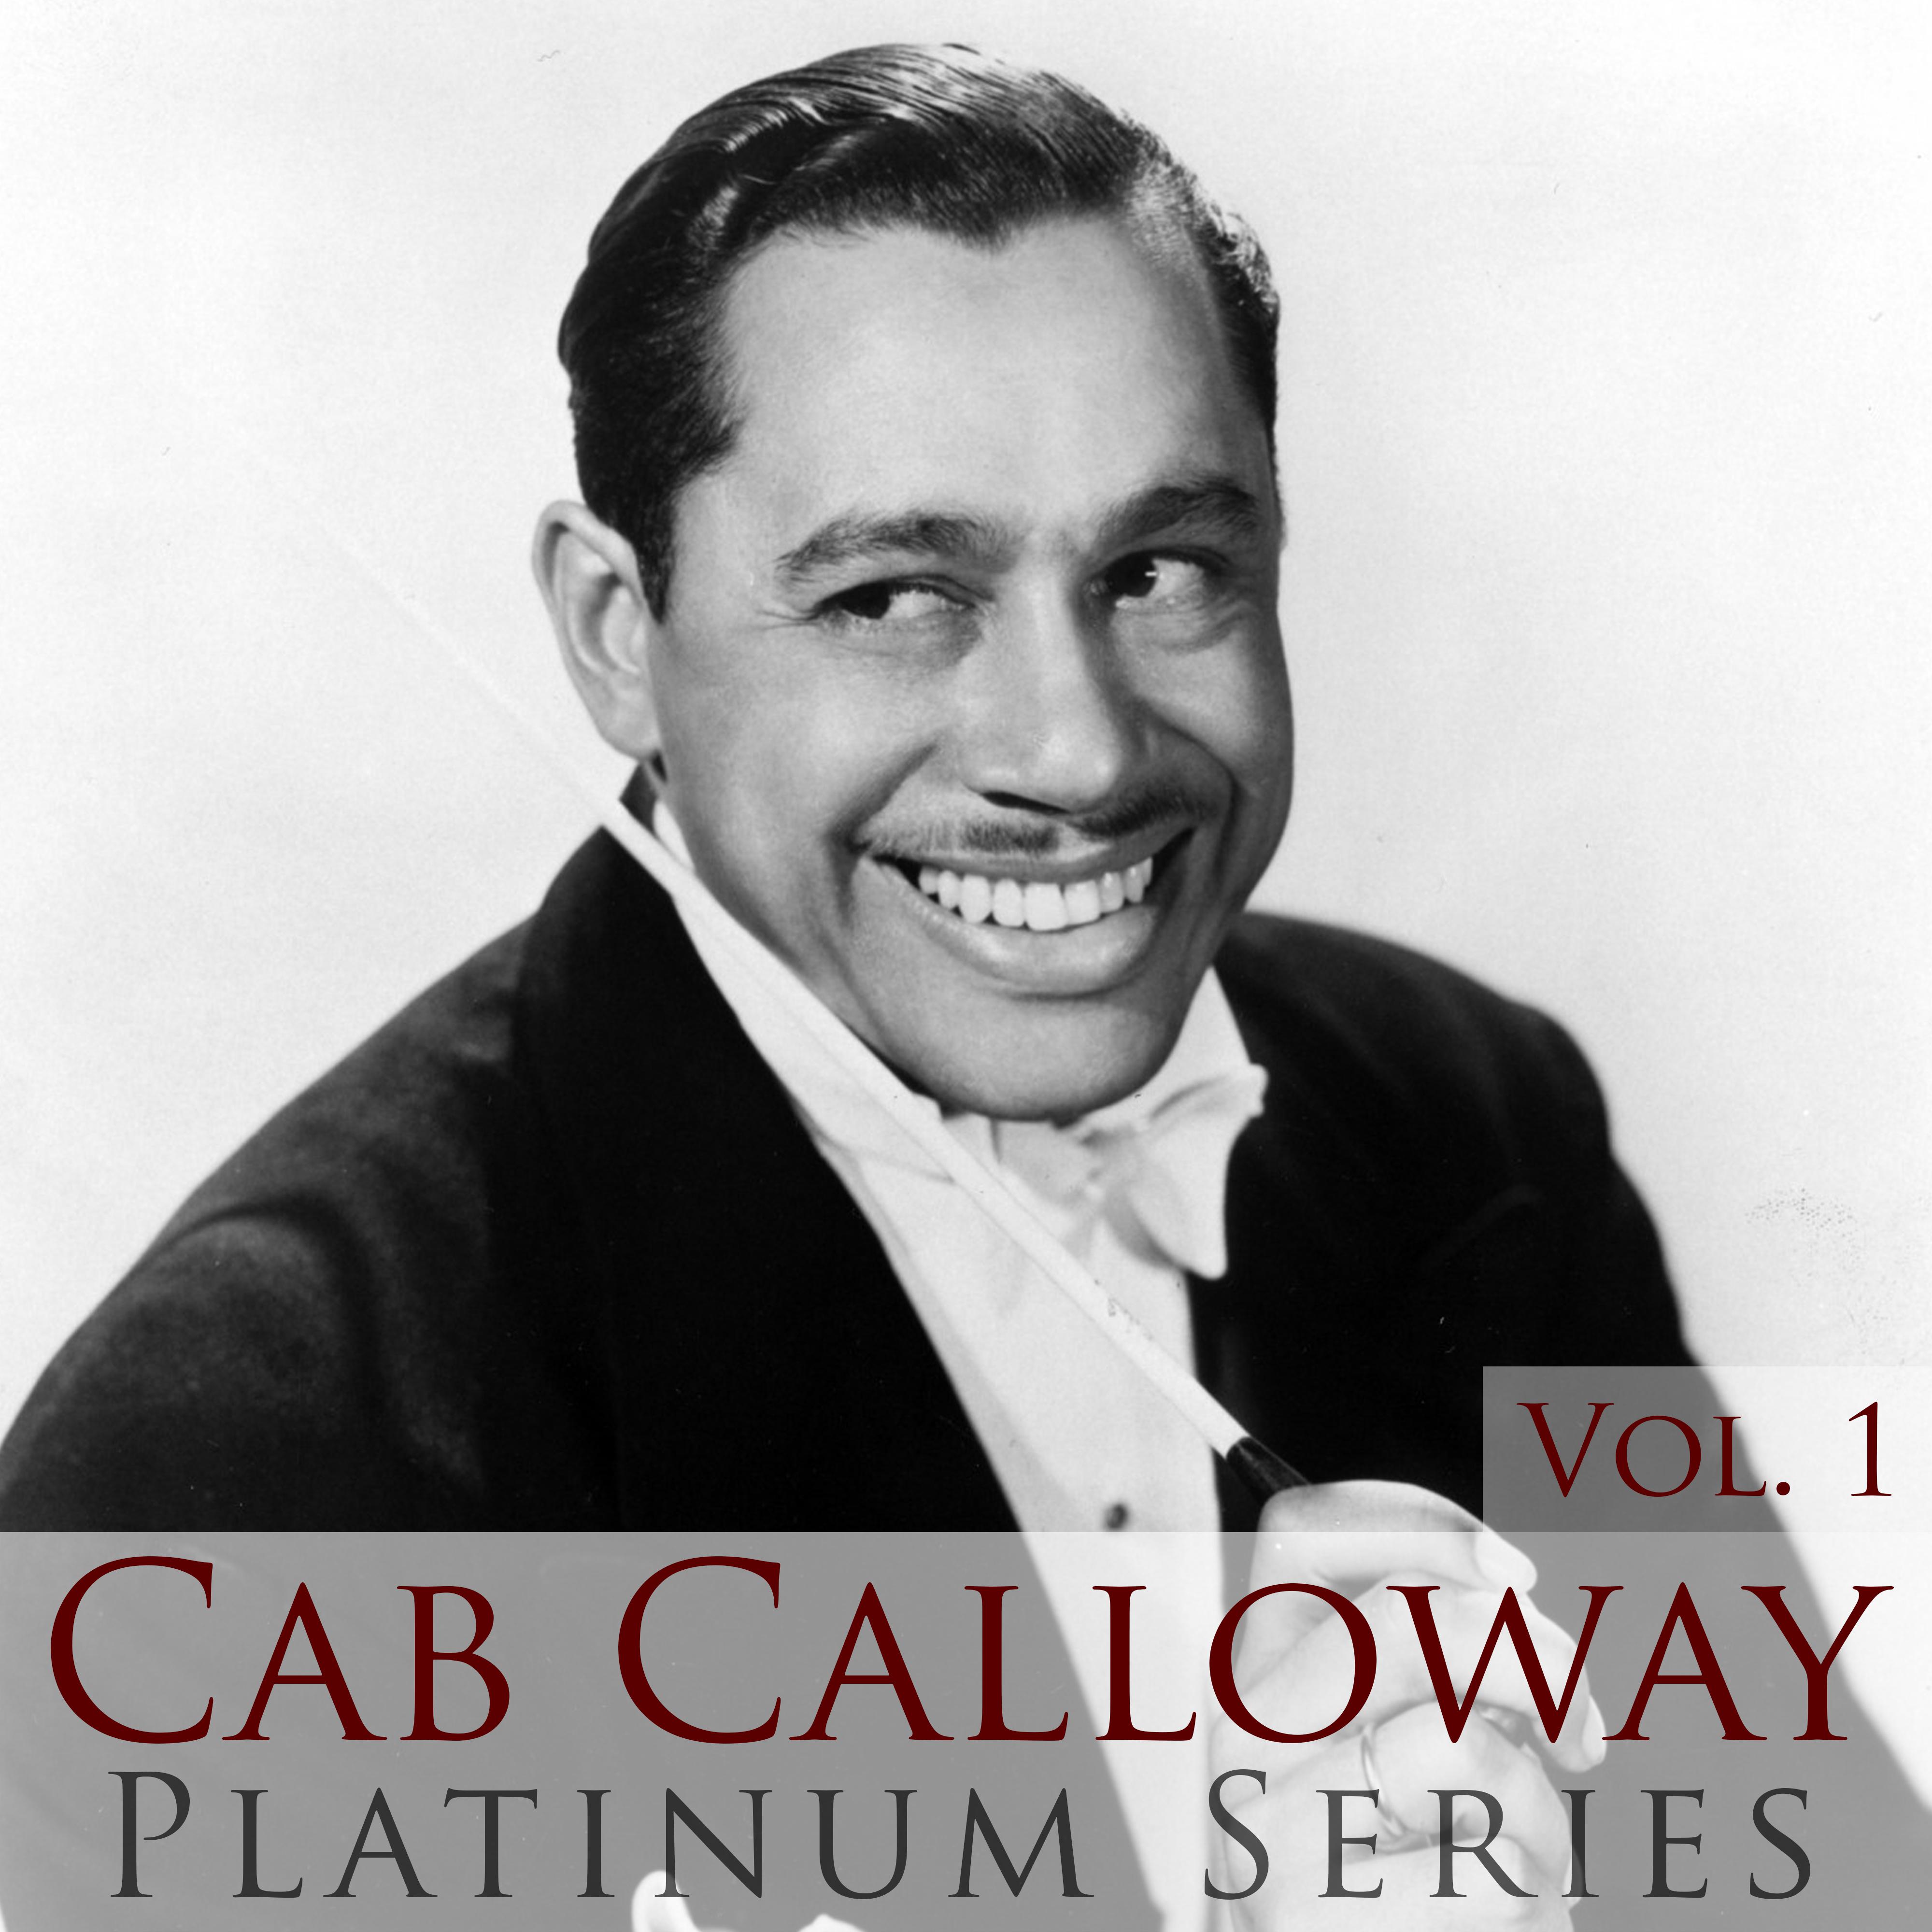 Cab Calloway - Platinum Series, Vol. 1